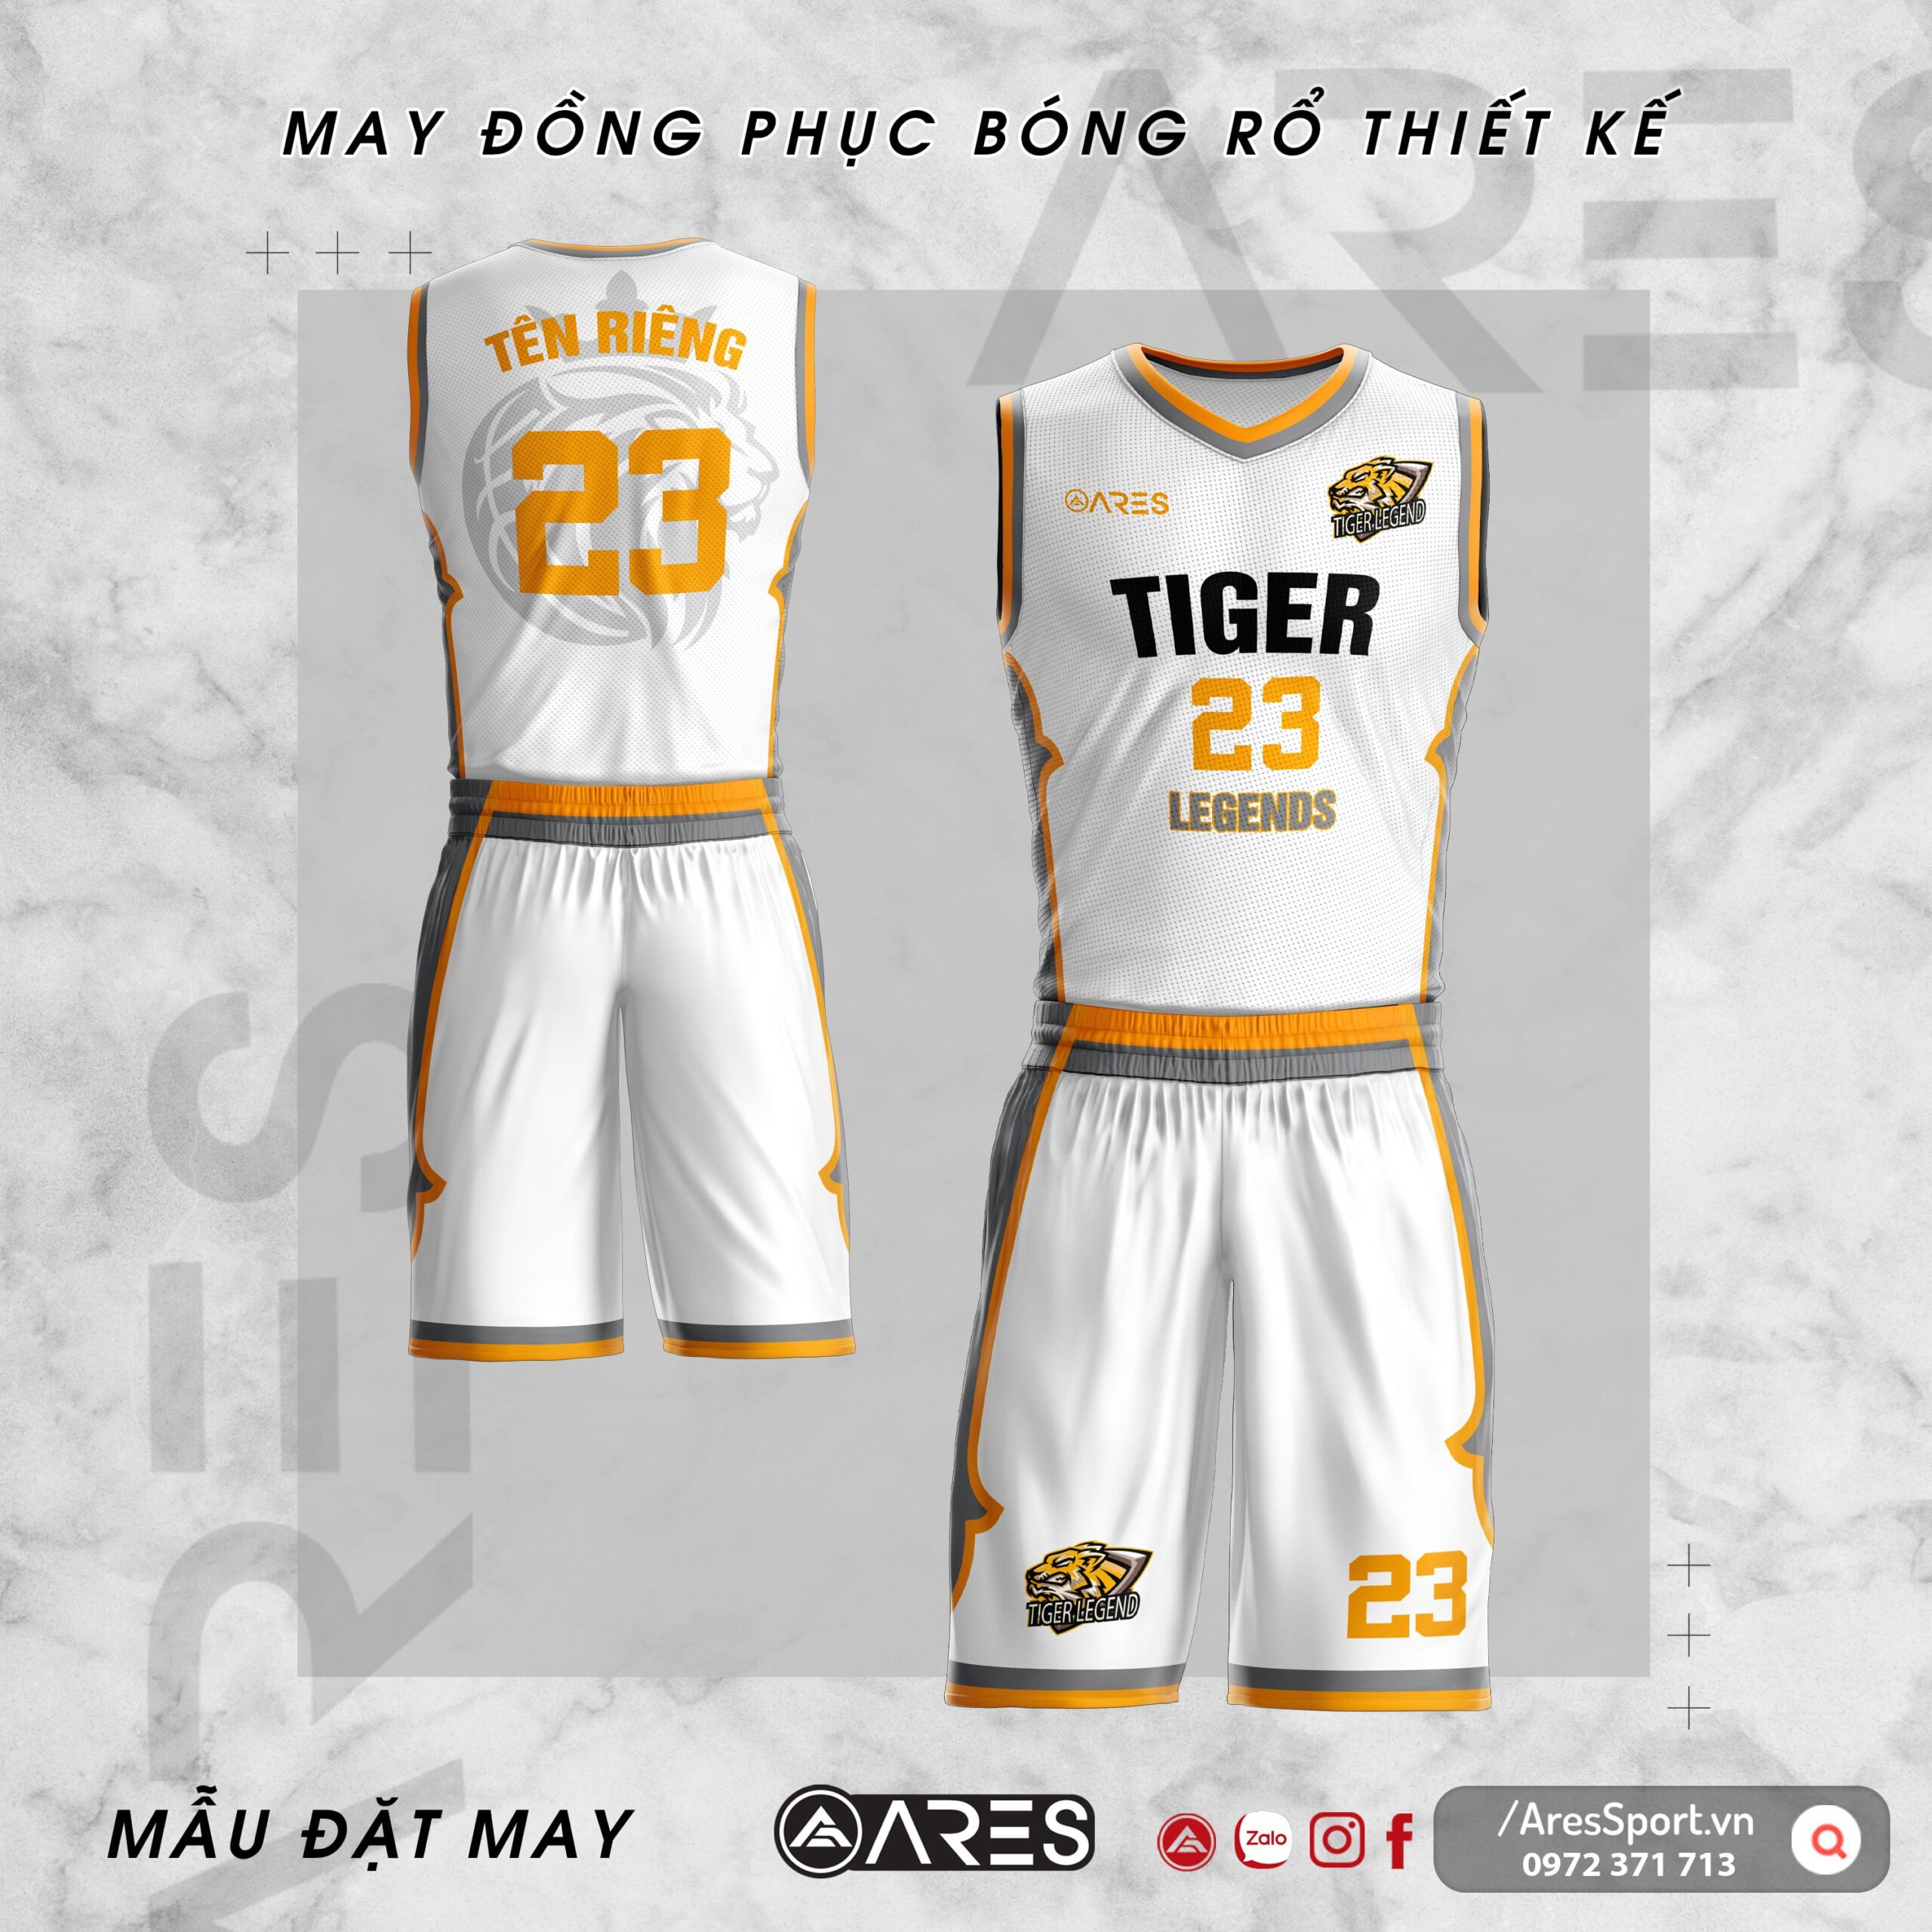 Đồng phục bóng rổ thiết kế Tiger trắng phối vàng nhẹ nhàng năng động